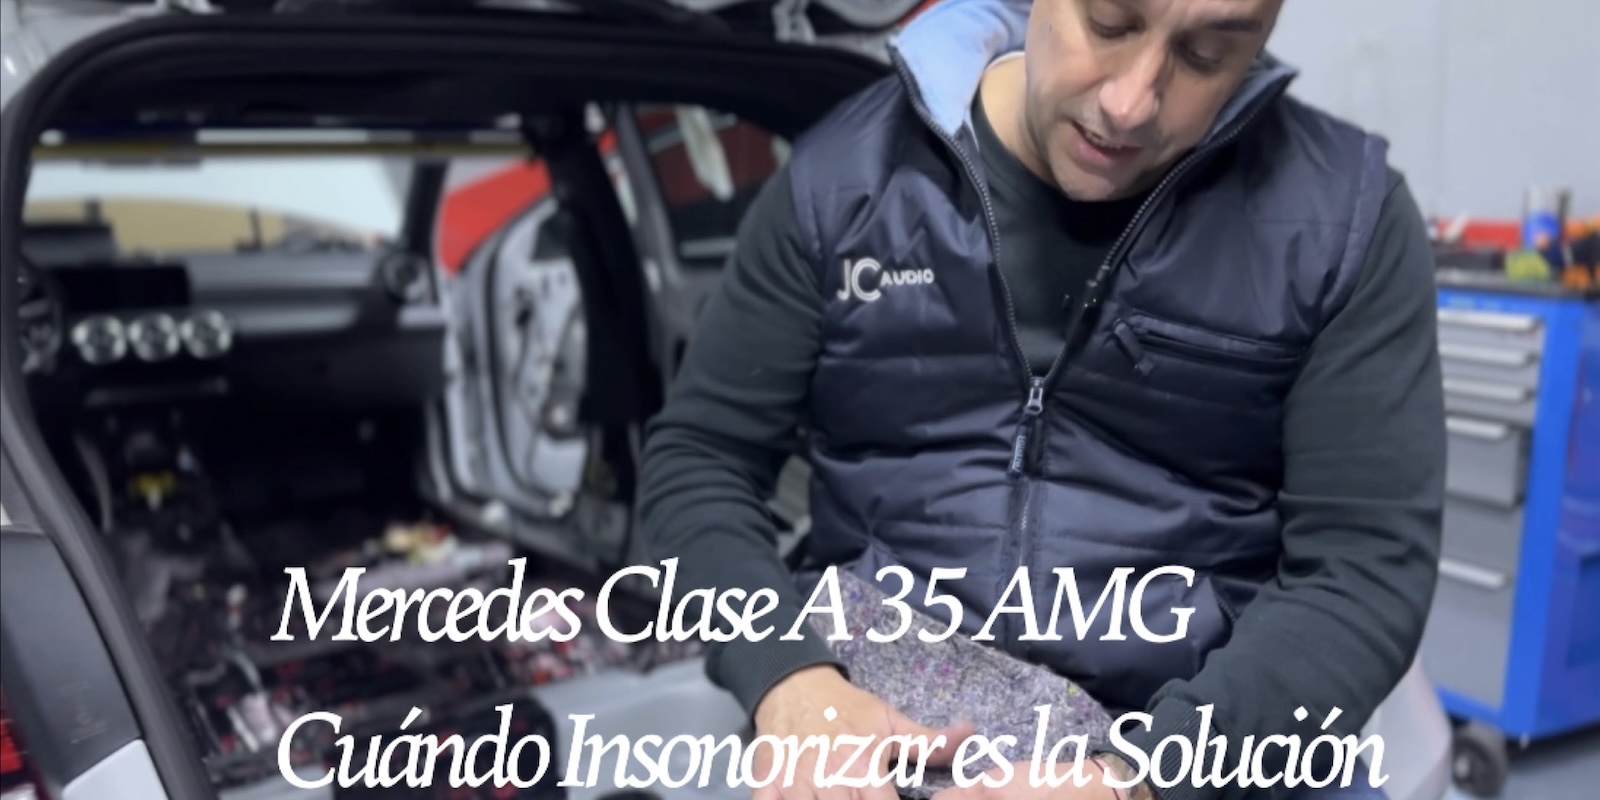 Mercedes Clase A 35 AMG Cuando insonorizar es la solución